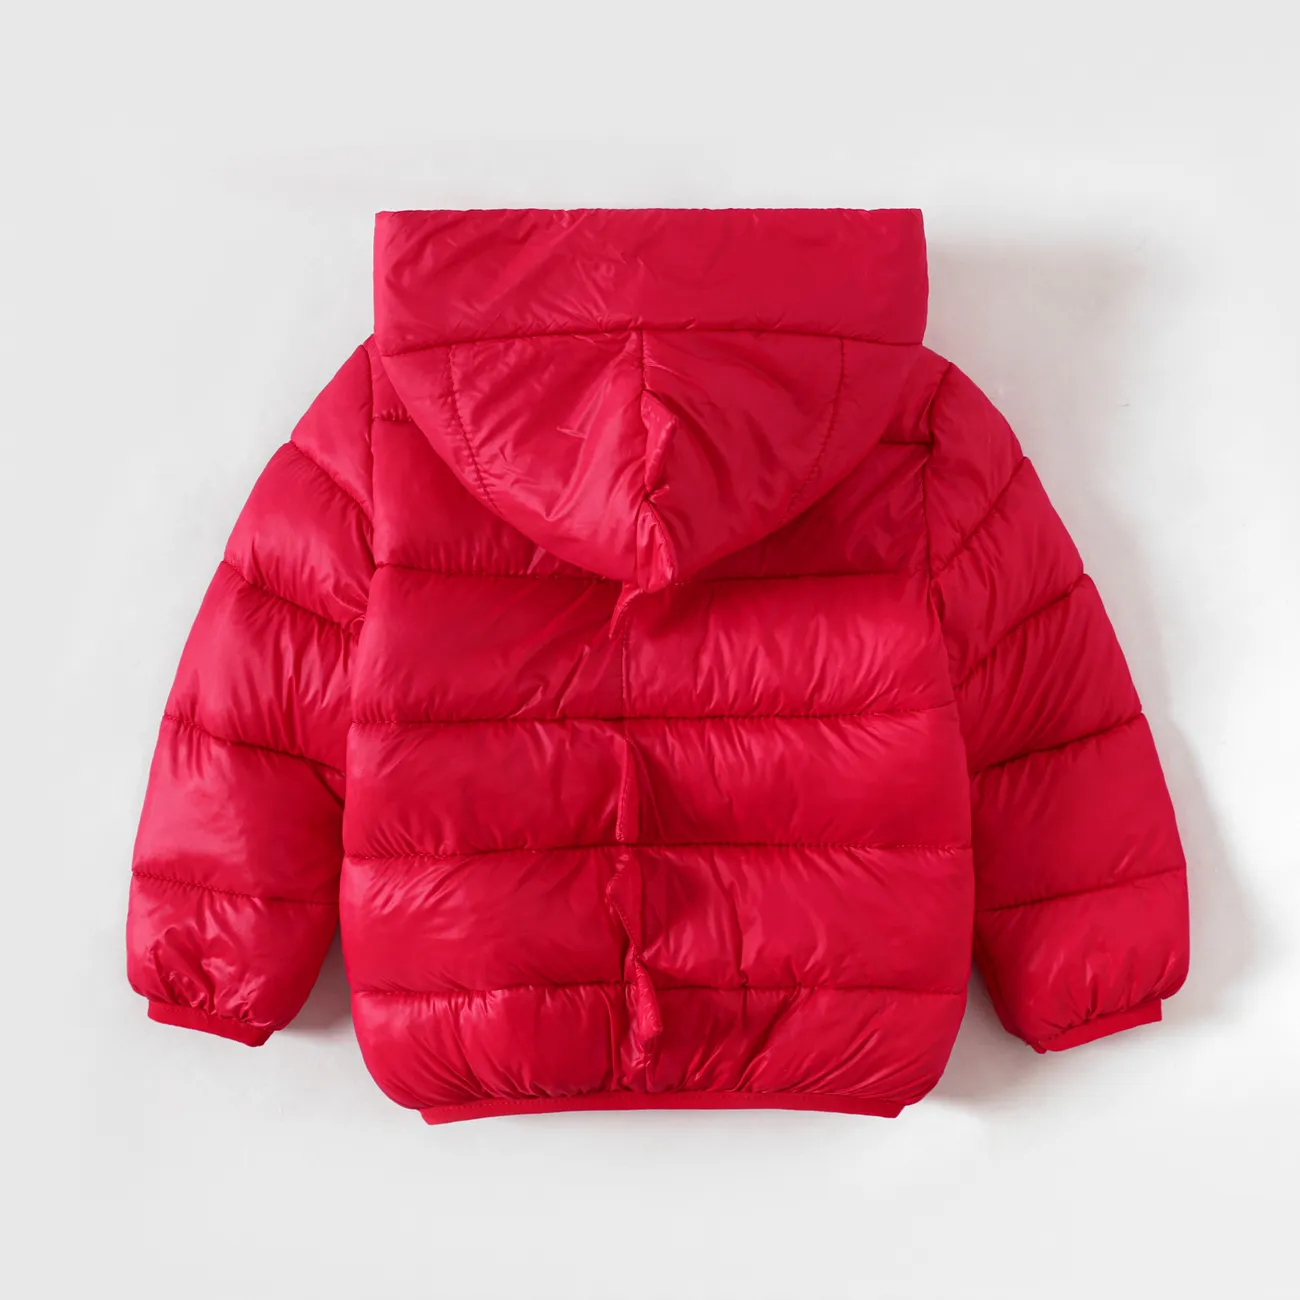 Toddler Boy/Girl Childlike Dinosaur Shape 3D Design Winter Coat Red big image 1